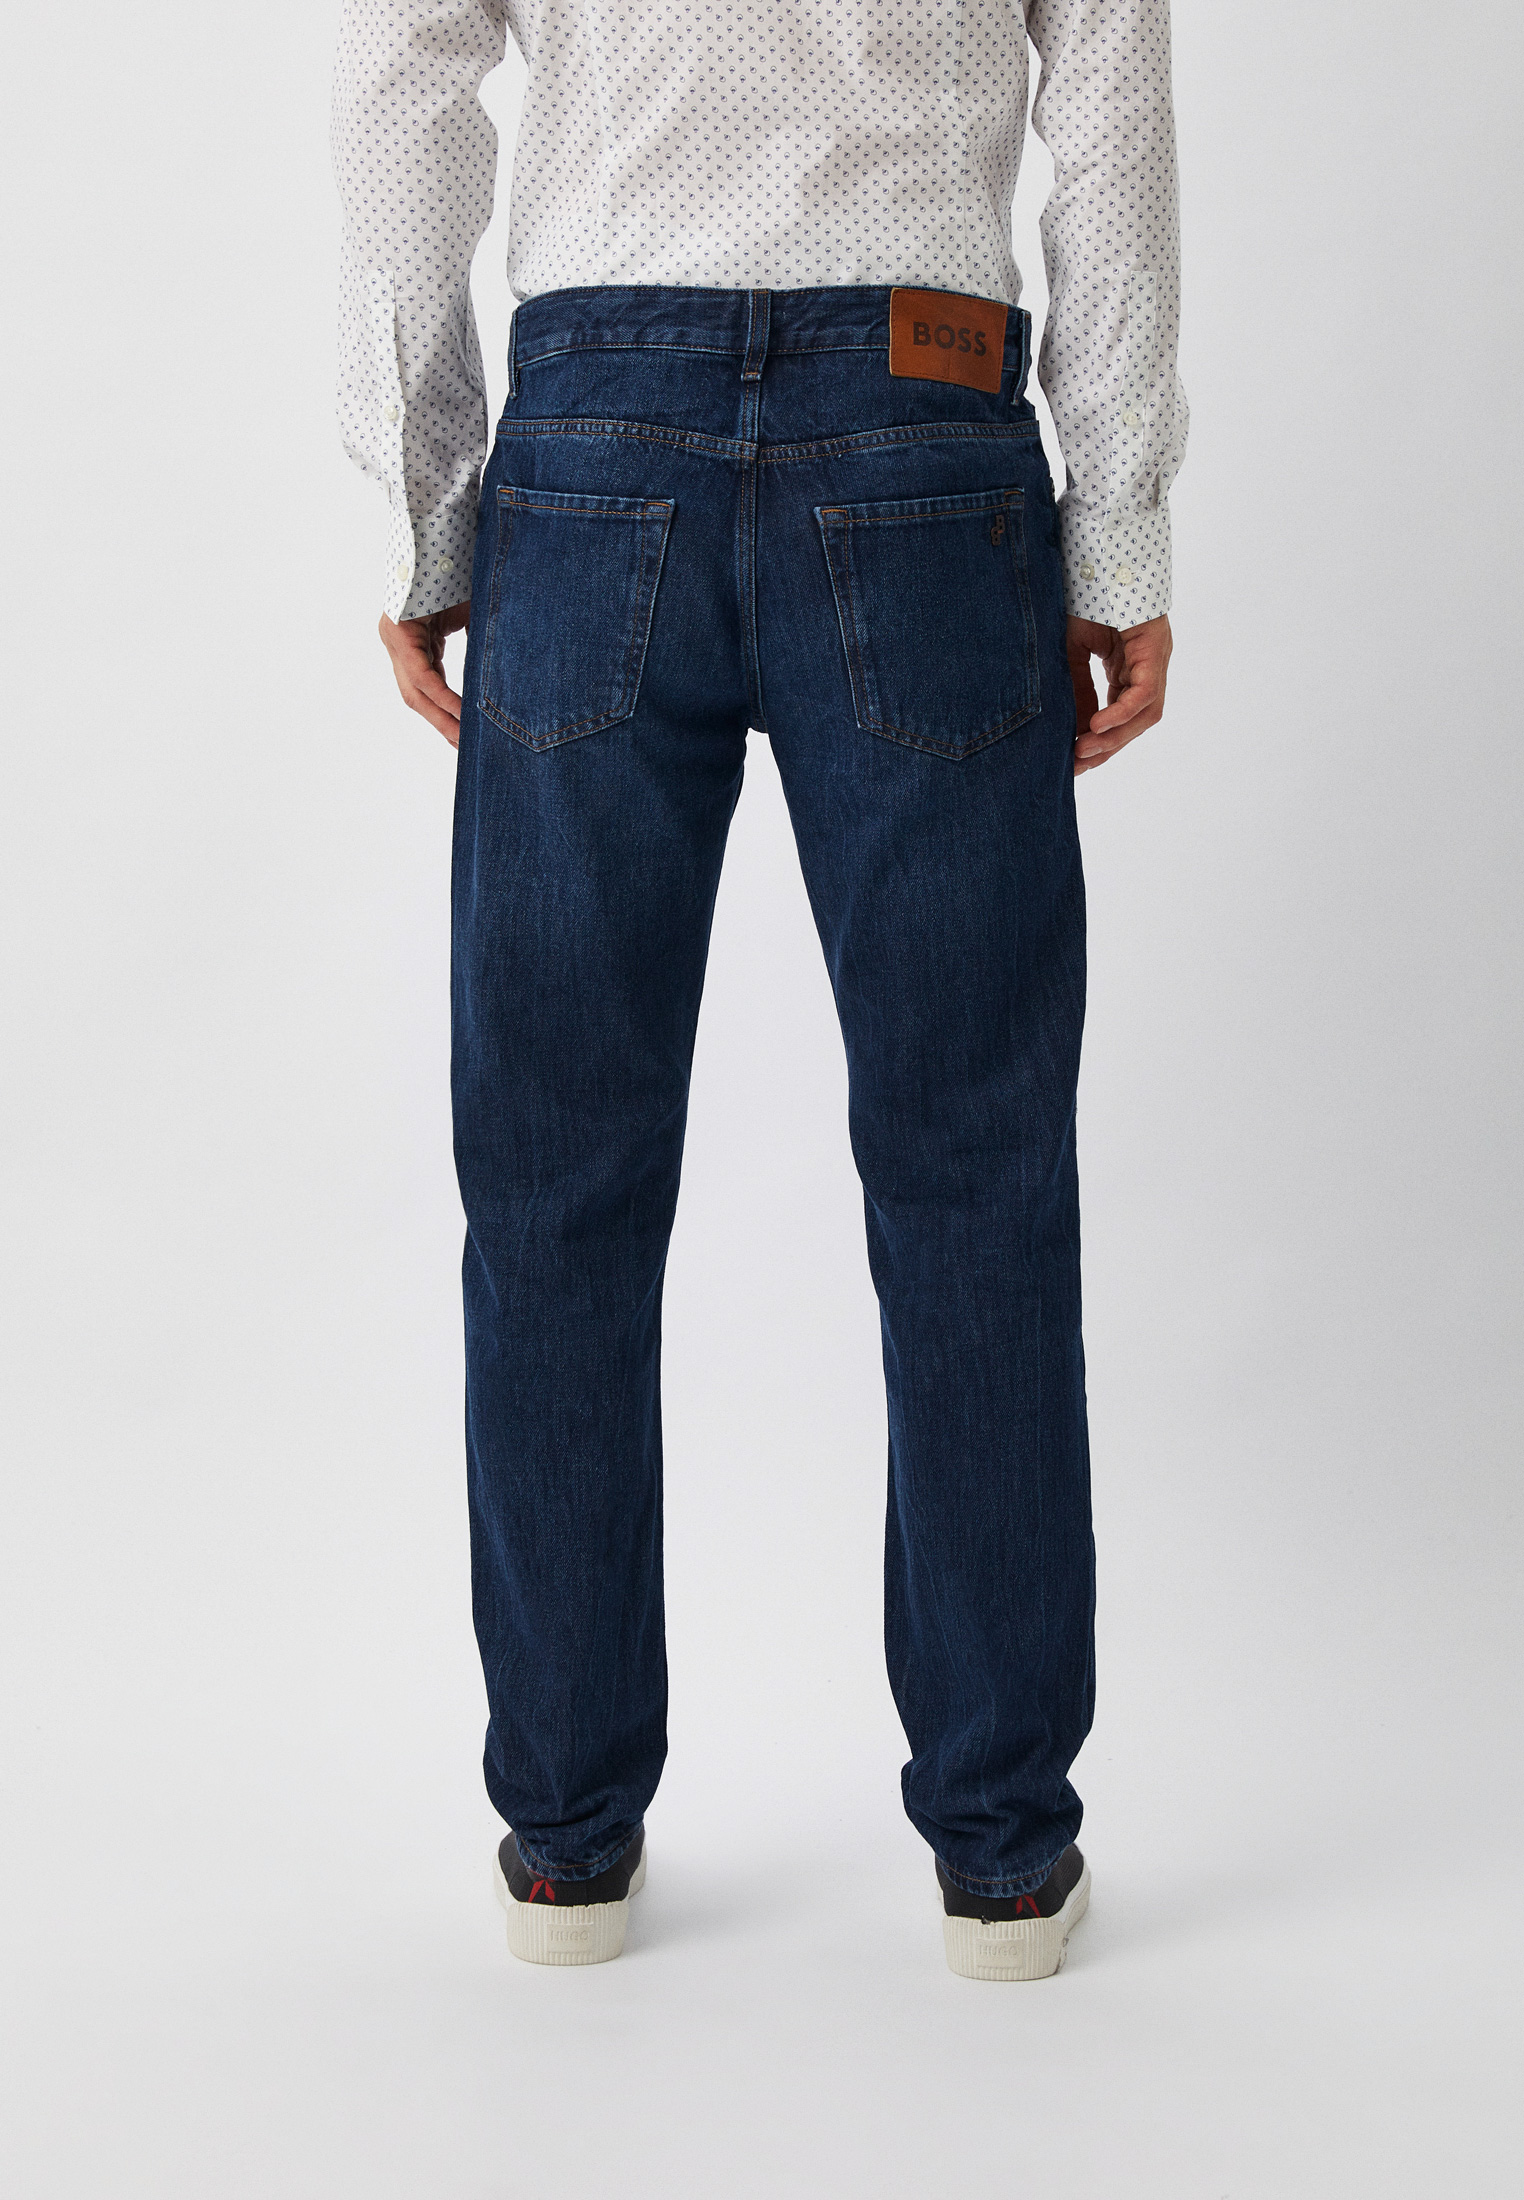 Мужские зауженные джинсы Boss (Босс) 50496352: изображение 3